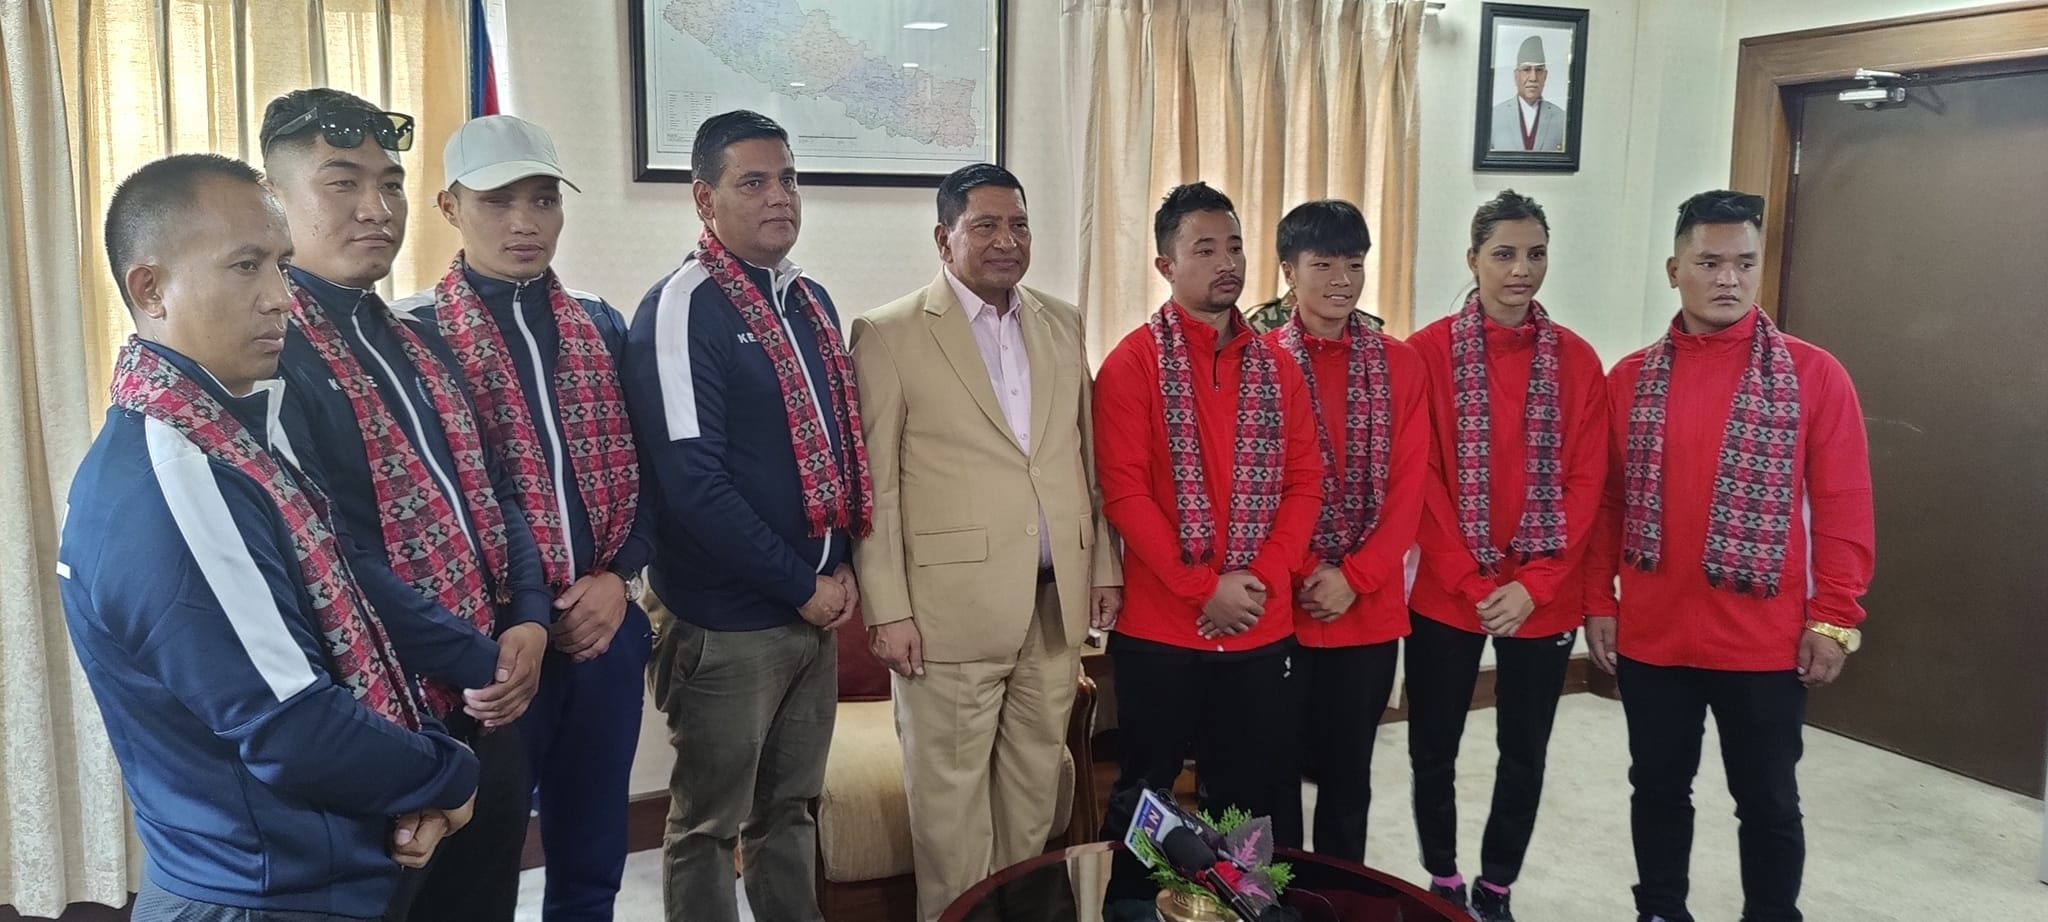 आइटिएफ विश्व तेक्वान्दो च्याम्पियनसिपमा नेपालबाट चार खेलाडी सहभागी हुने